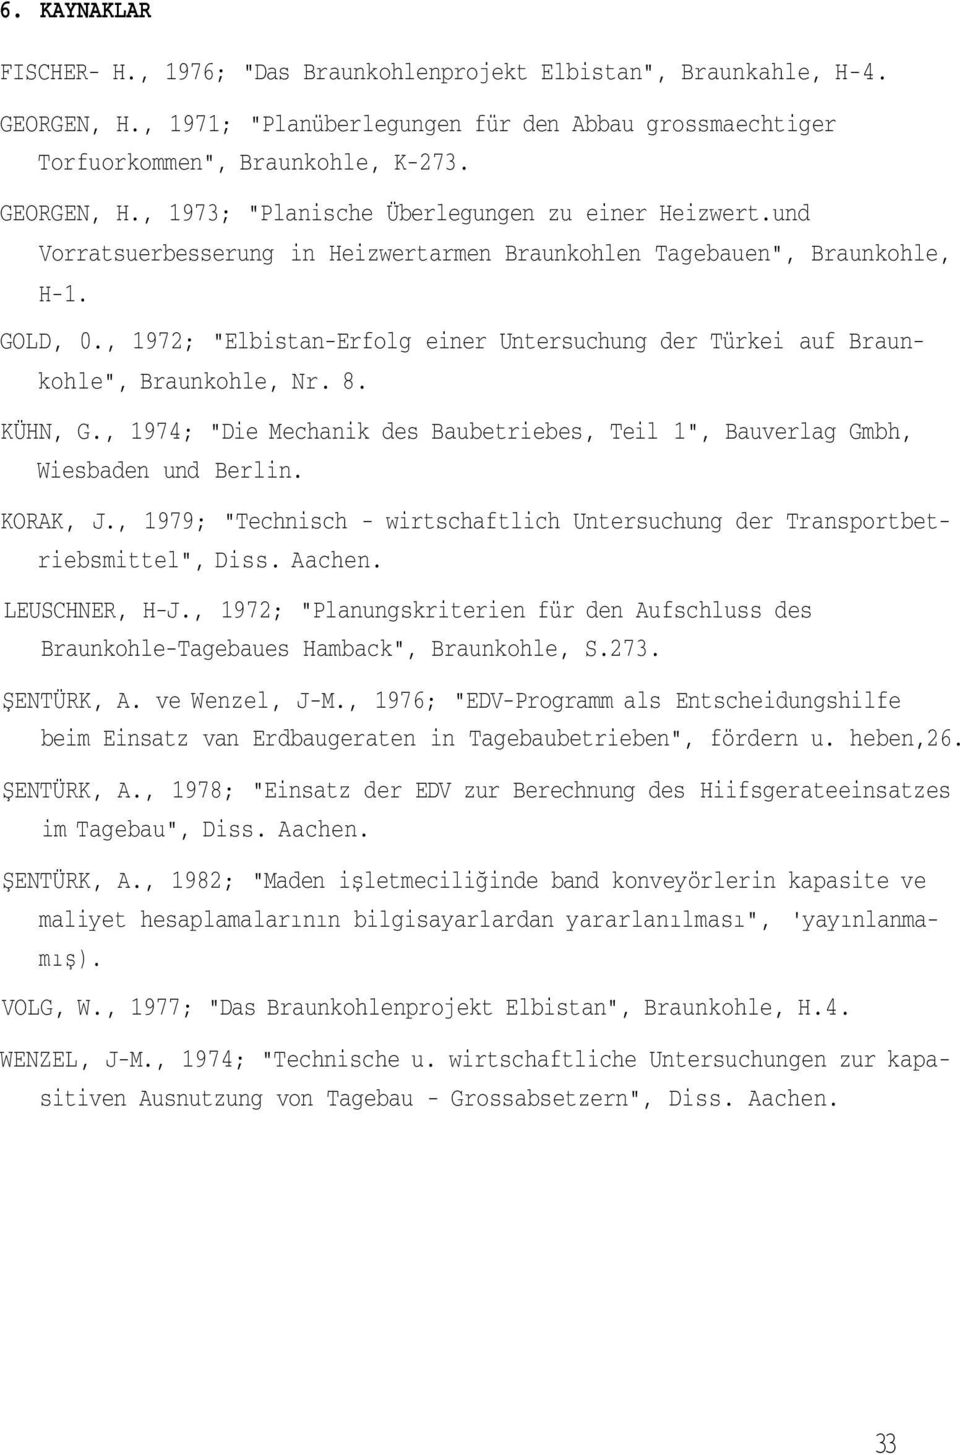 , 1974; "Die Mechanik des Baubetriebes, Teil 1", Bauverlag Gmbh, Wiesbaden und Berlin. KORAK, J., 1979; "Technisch - wirtschaftlich Untersuchung der Transportbetriebsmittel", Diss. Aachen.